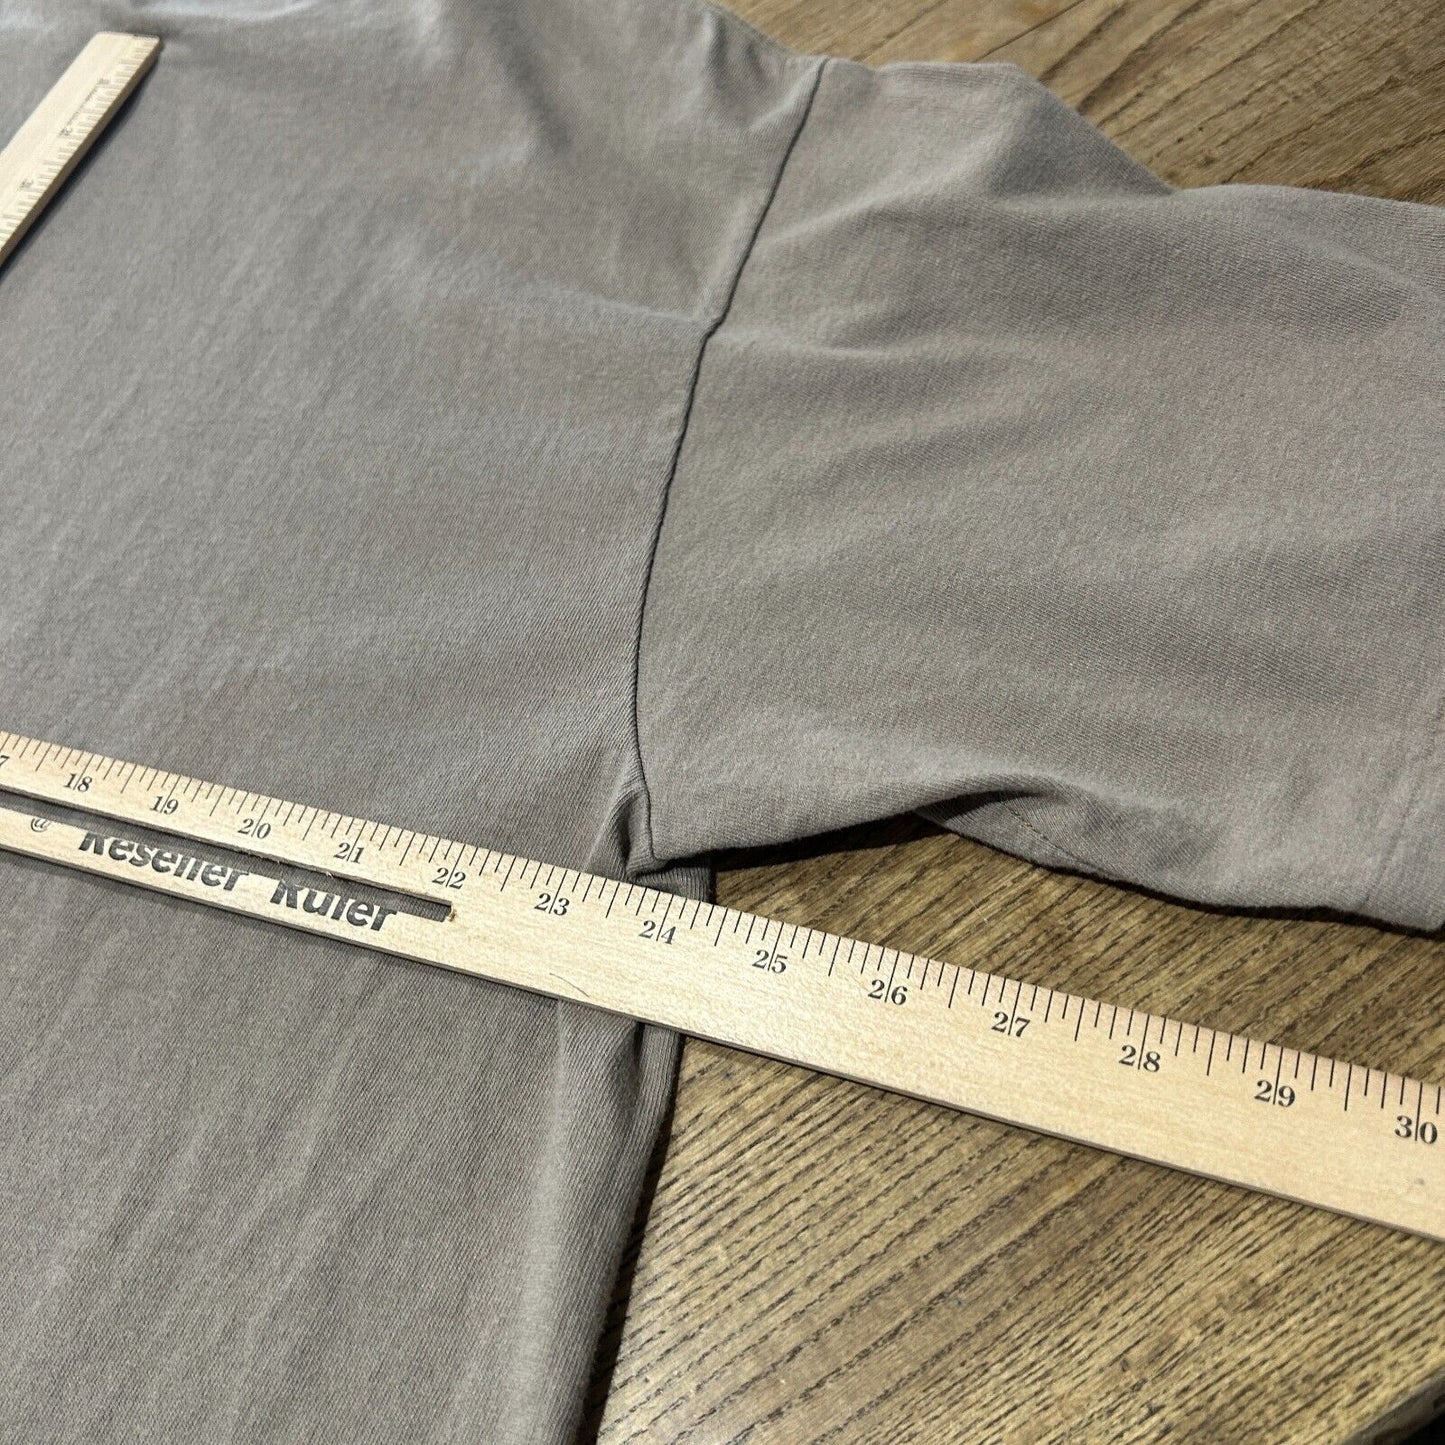 VINTAGE 1999 | PIMPIN' HO Sale Capital Concepts Olive T-Shirt sz XL Adult